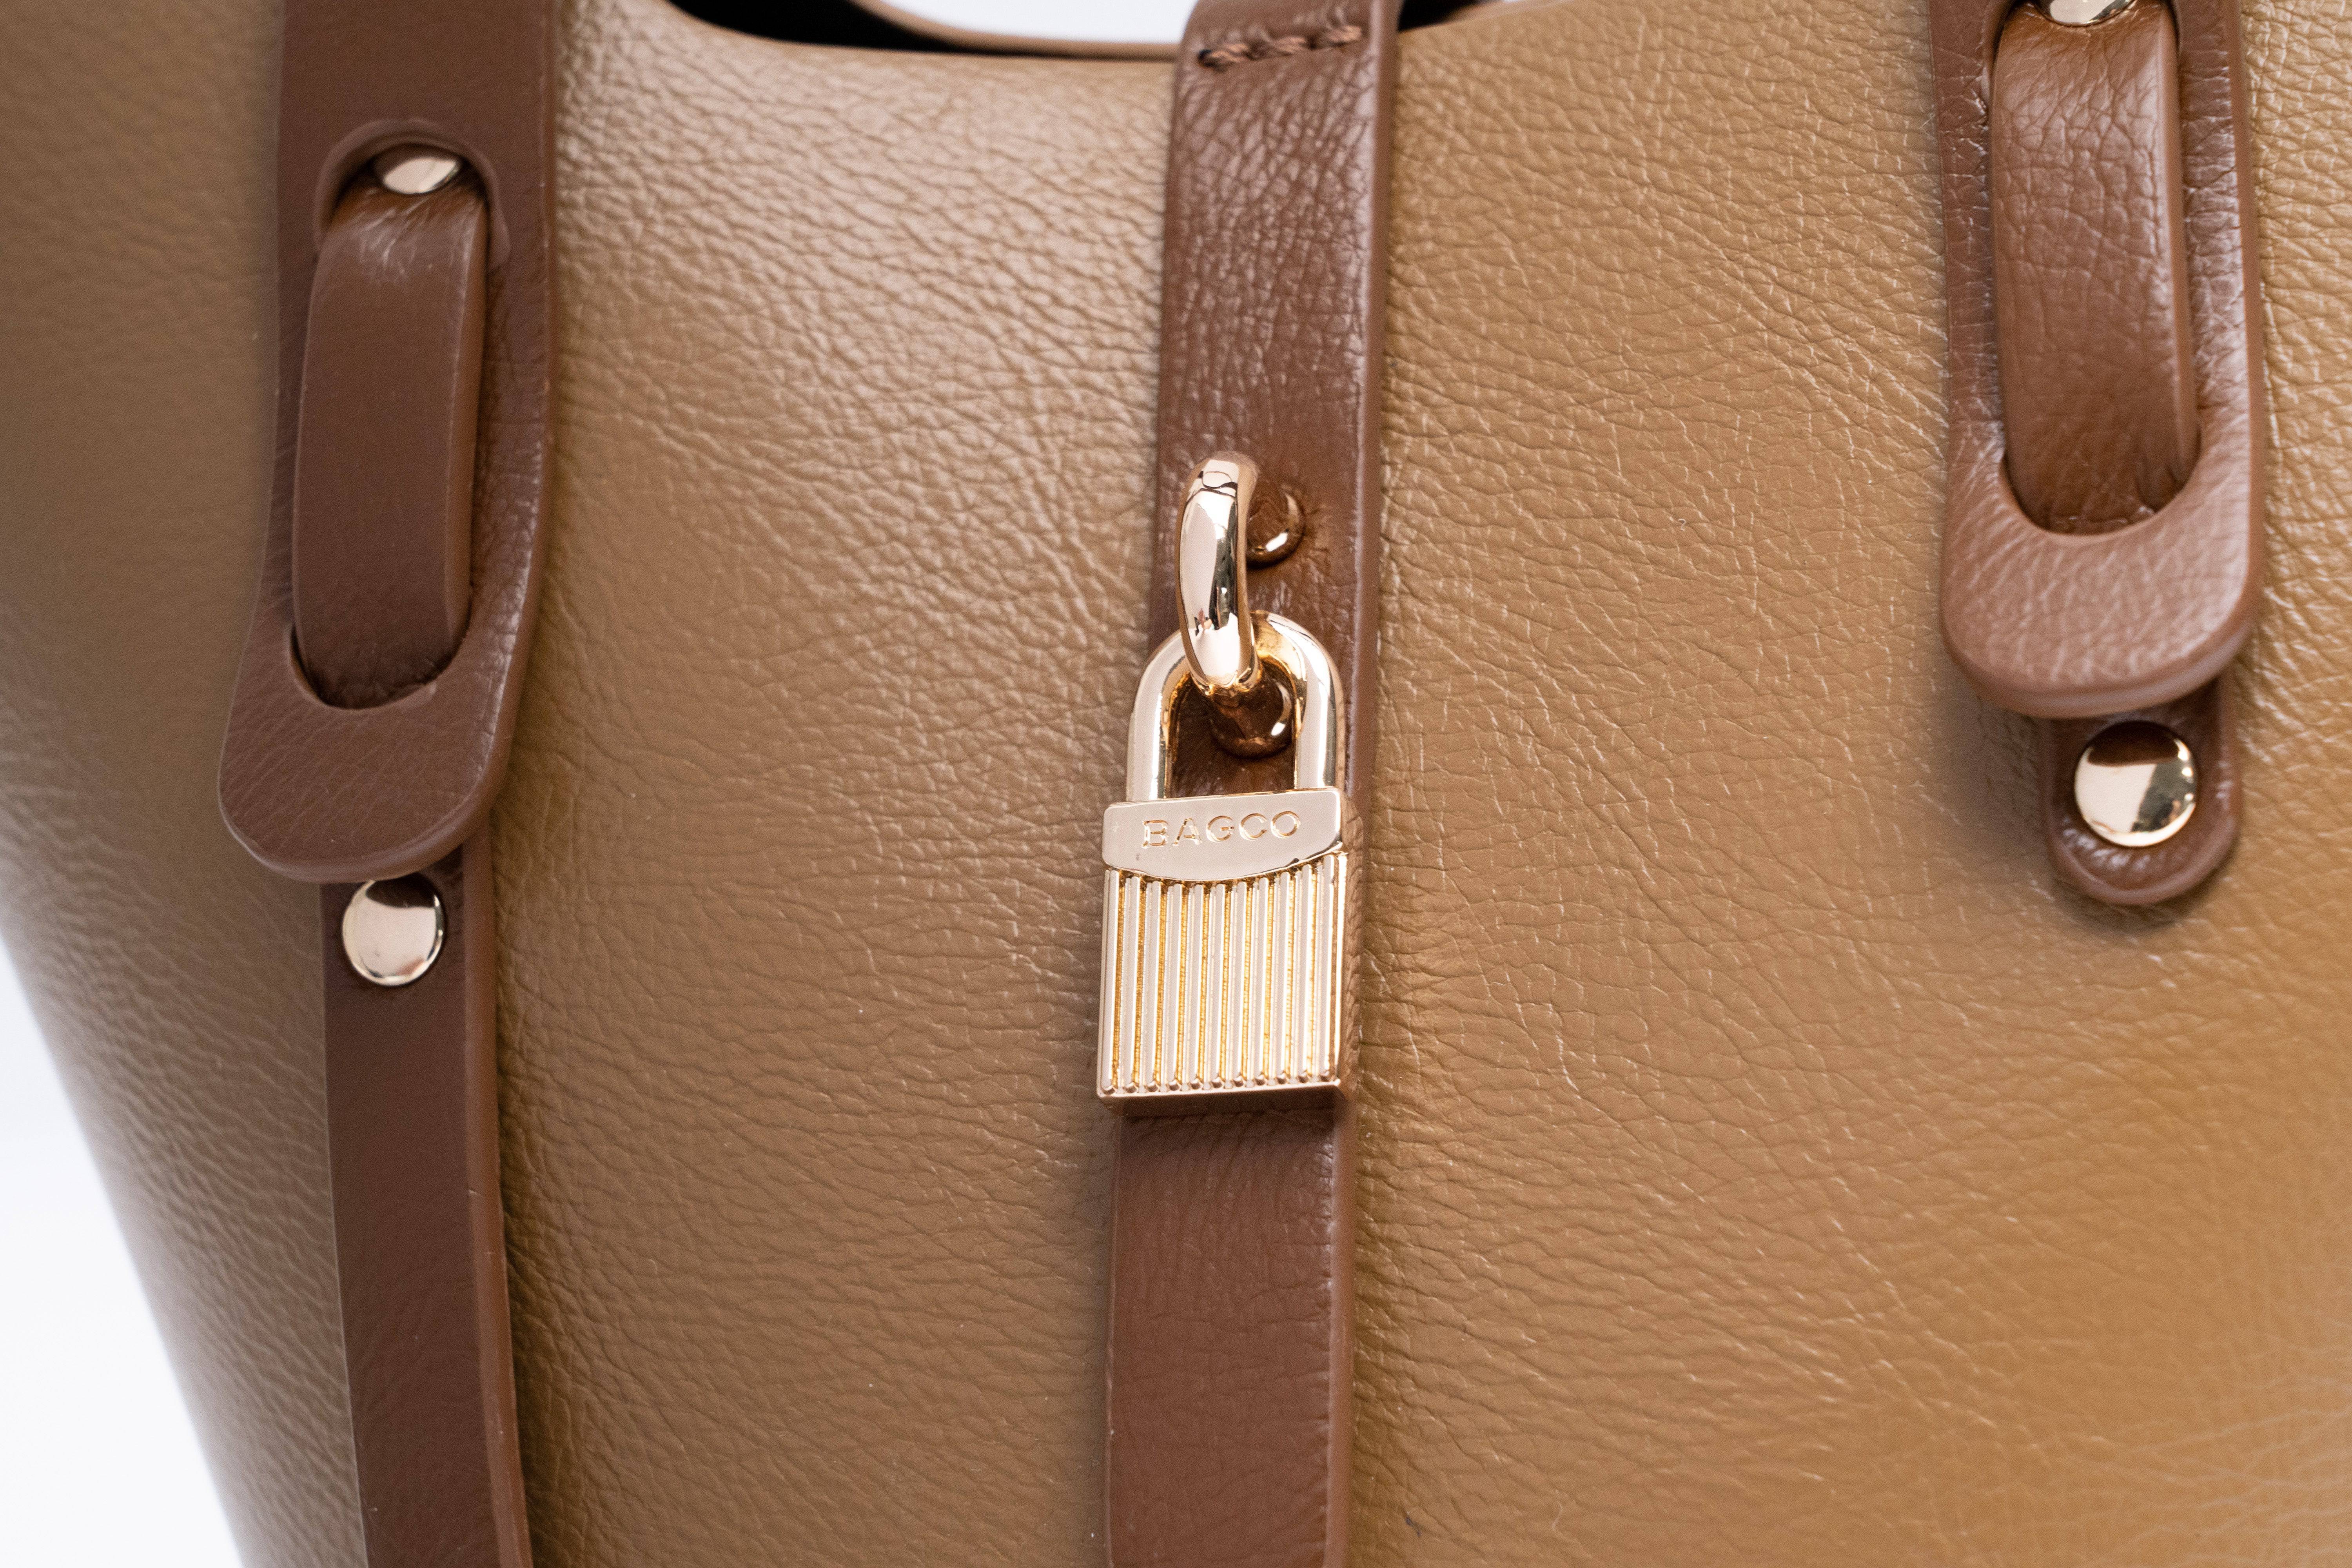 حقيبة باللون العنابى كبيرة الحجم والسعة بتفاصيل بسيطة وأنيقة. - KSA